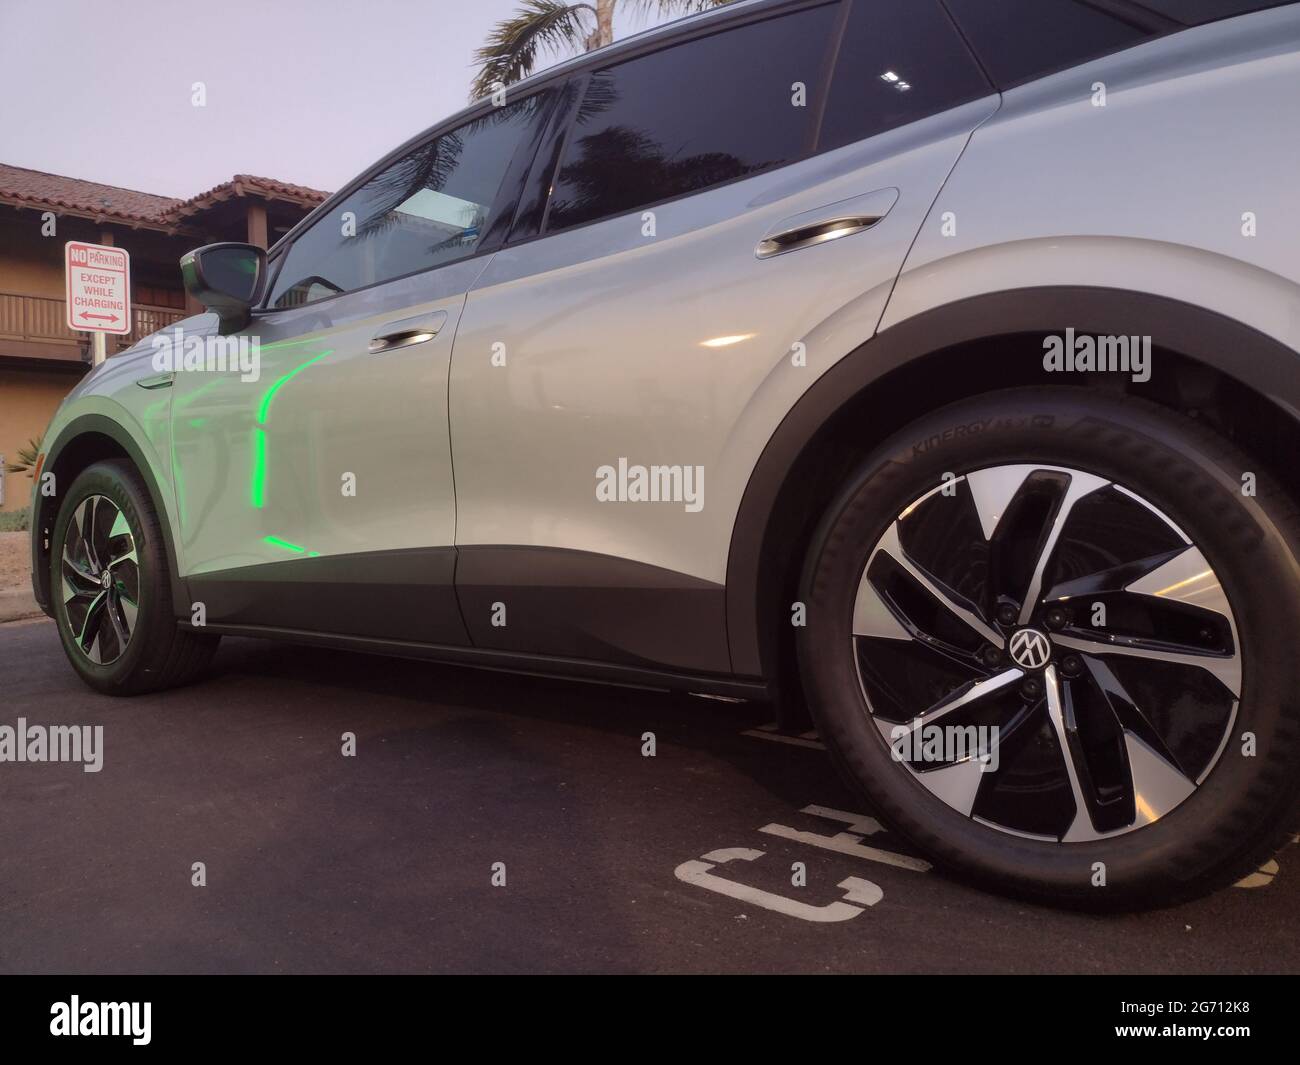 9 juillet 2021: Une voiture électrique - Volkswagen ID 4 Pro, facture dans un parking à San Diego, Californie, le vendredi 9 juillet 2021. (Image crédit: © Rishi DekaZUMA Wire) Banque D'Images